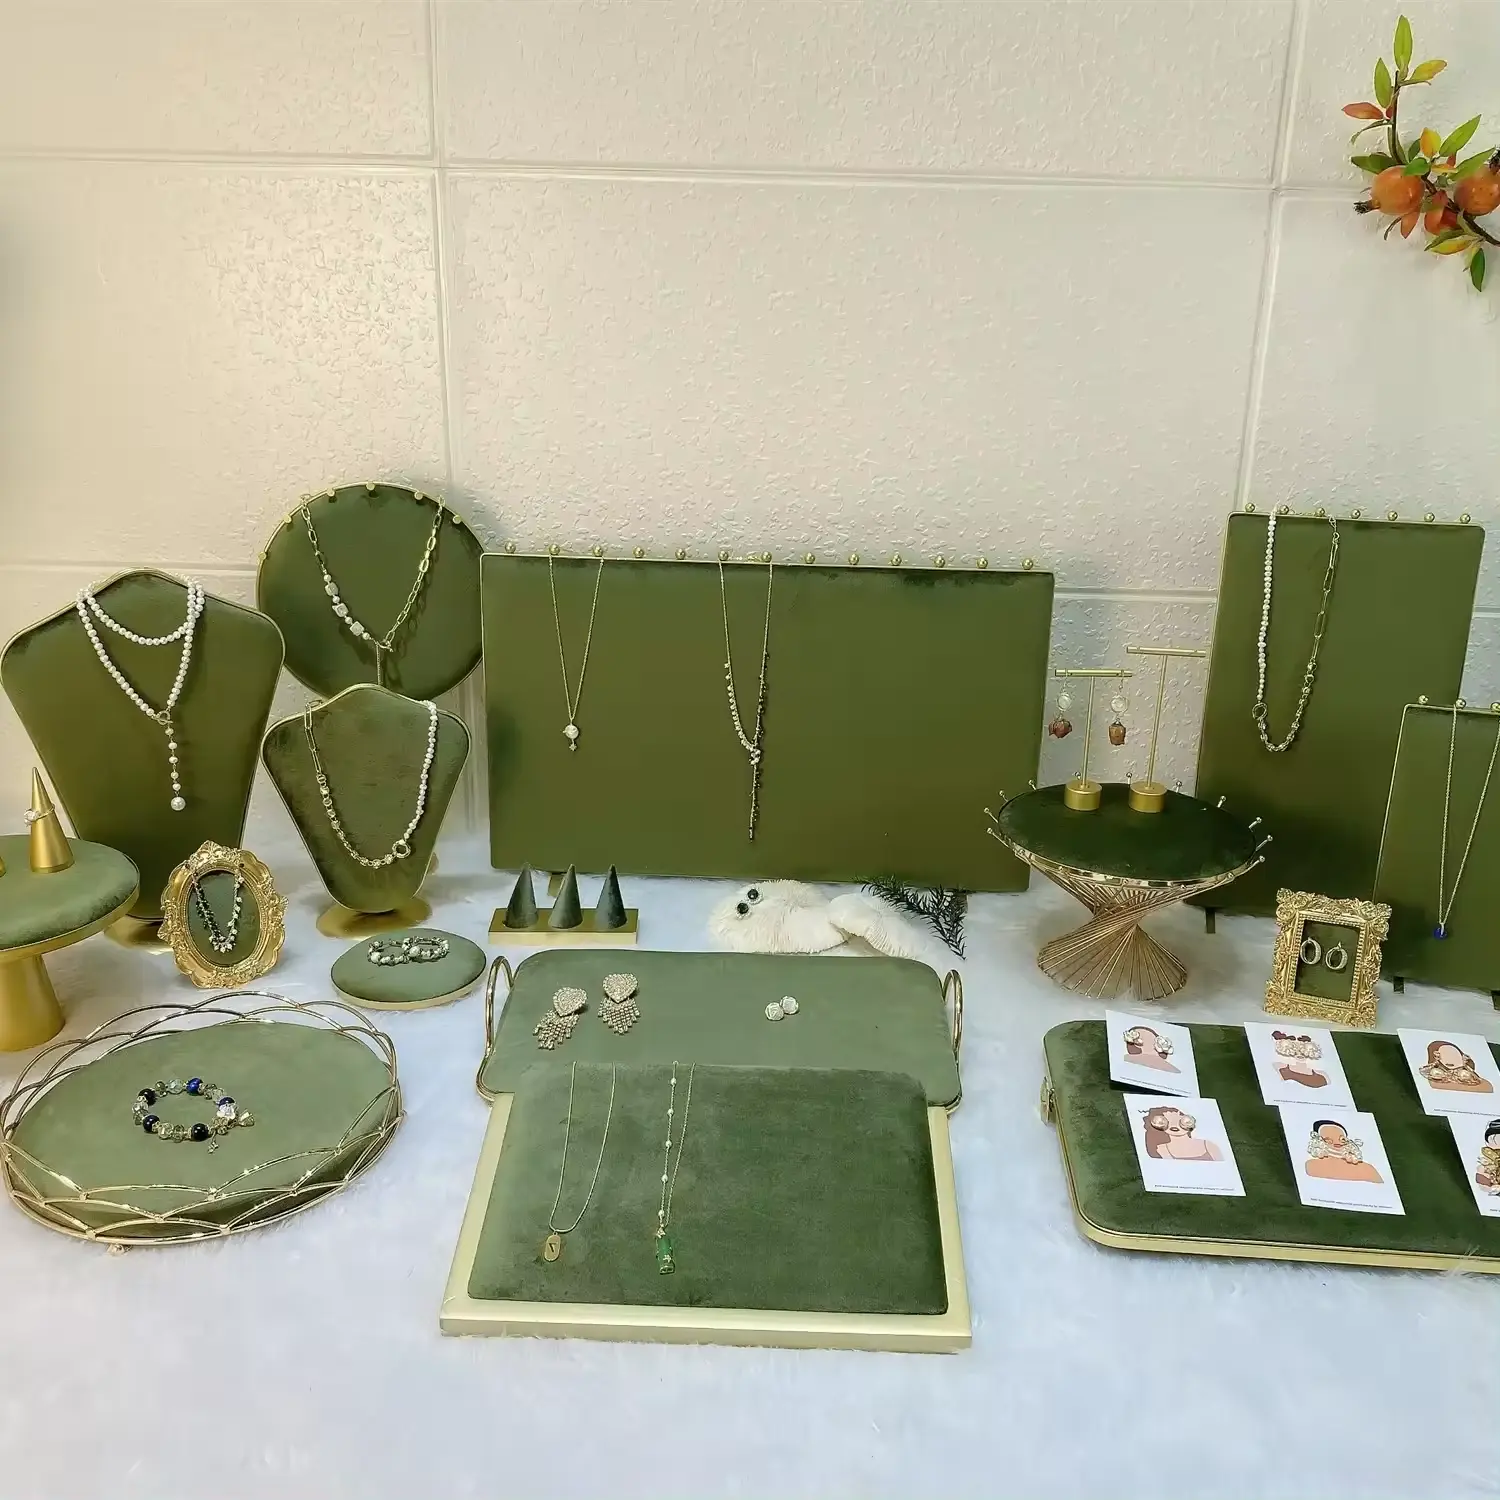 Estante de exhibición de joyería de la serie verde clásica, accesorios para anillo, collar, pendiente, soporte, bandeja, maniquí, soporte de joyería, soporte de exhibición